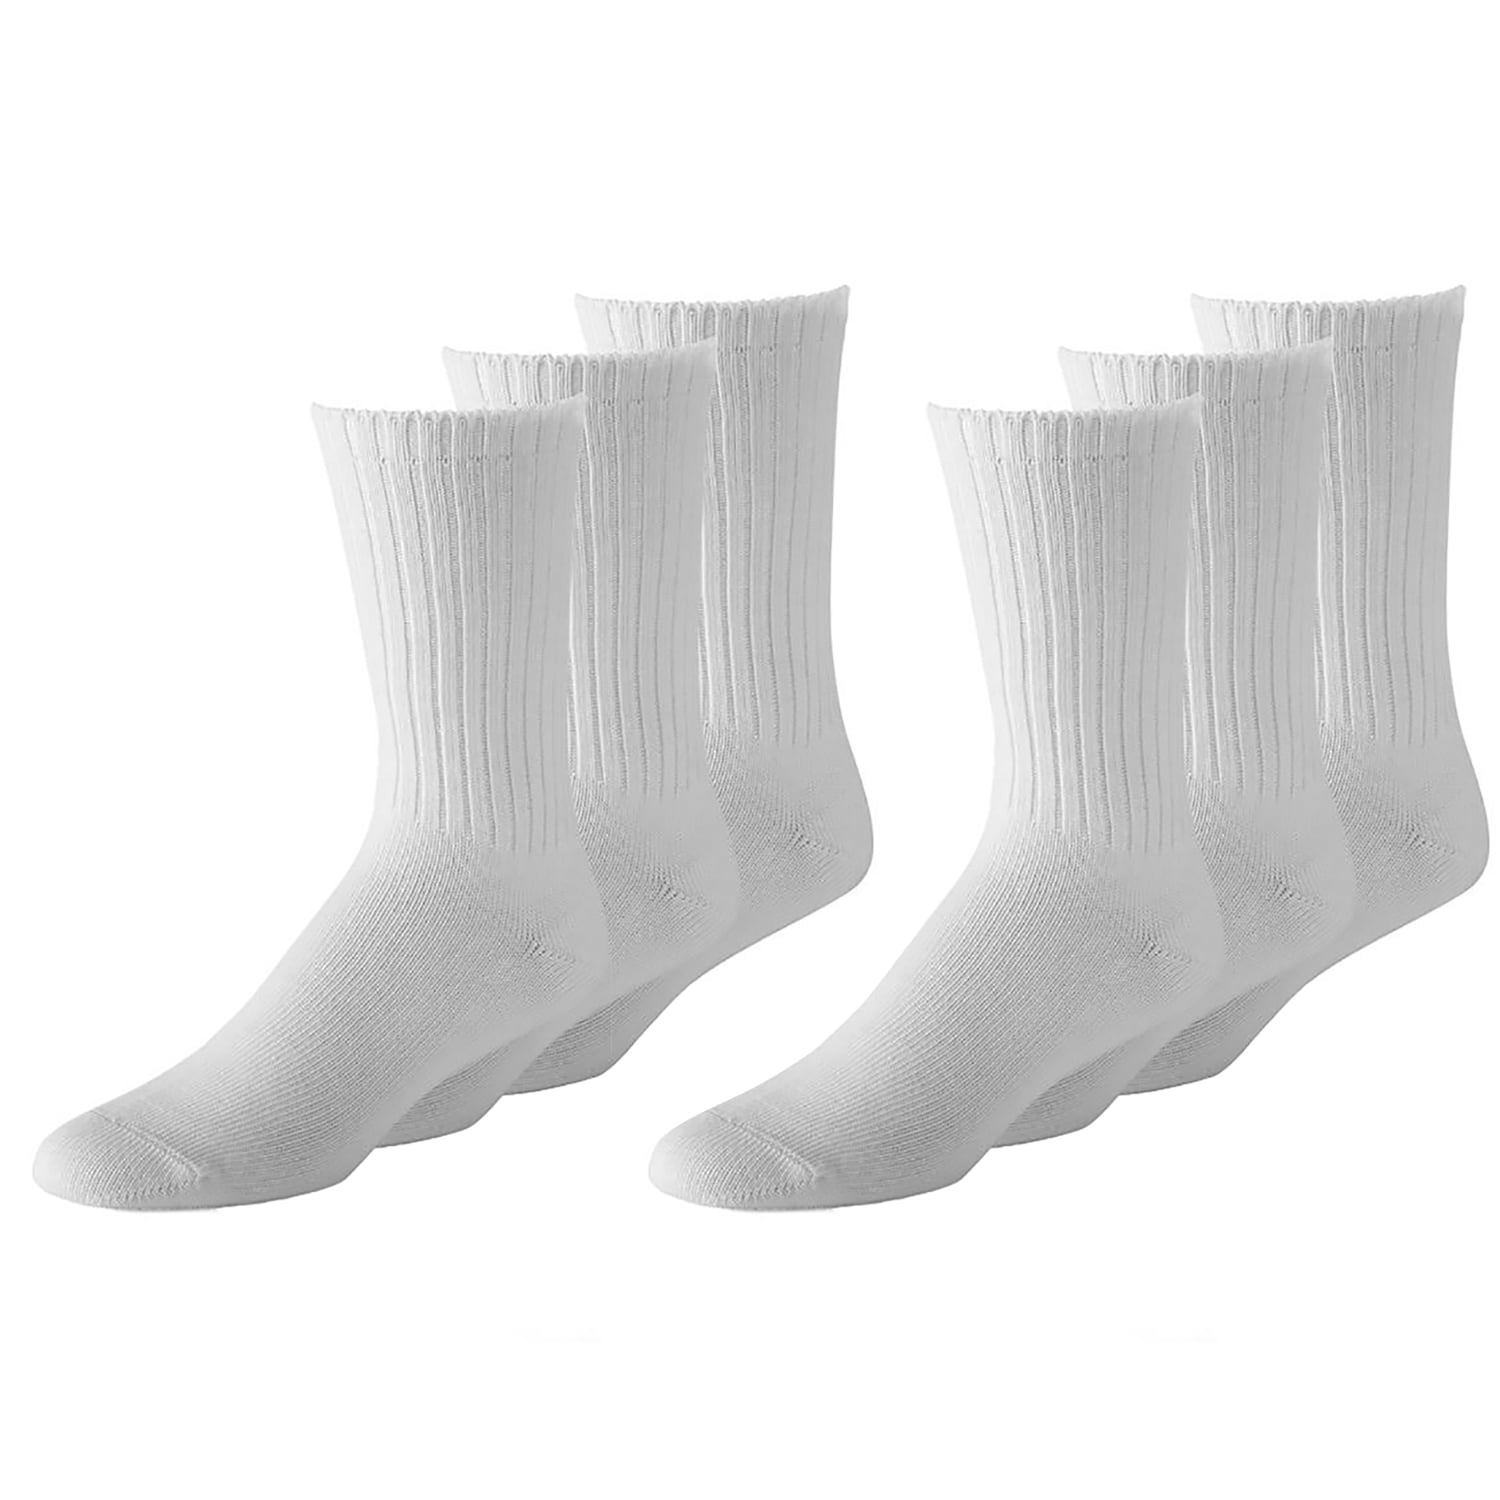 Wholesale Assorted Colors Plain Men's Crew Athletic Sport Socks Size 9-11 10-13 